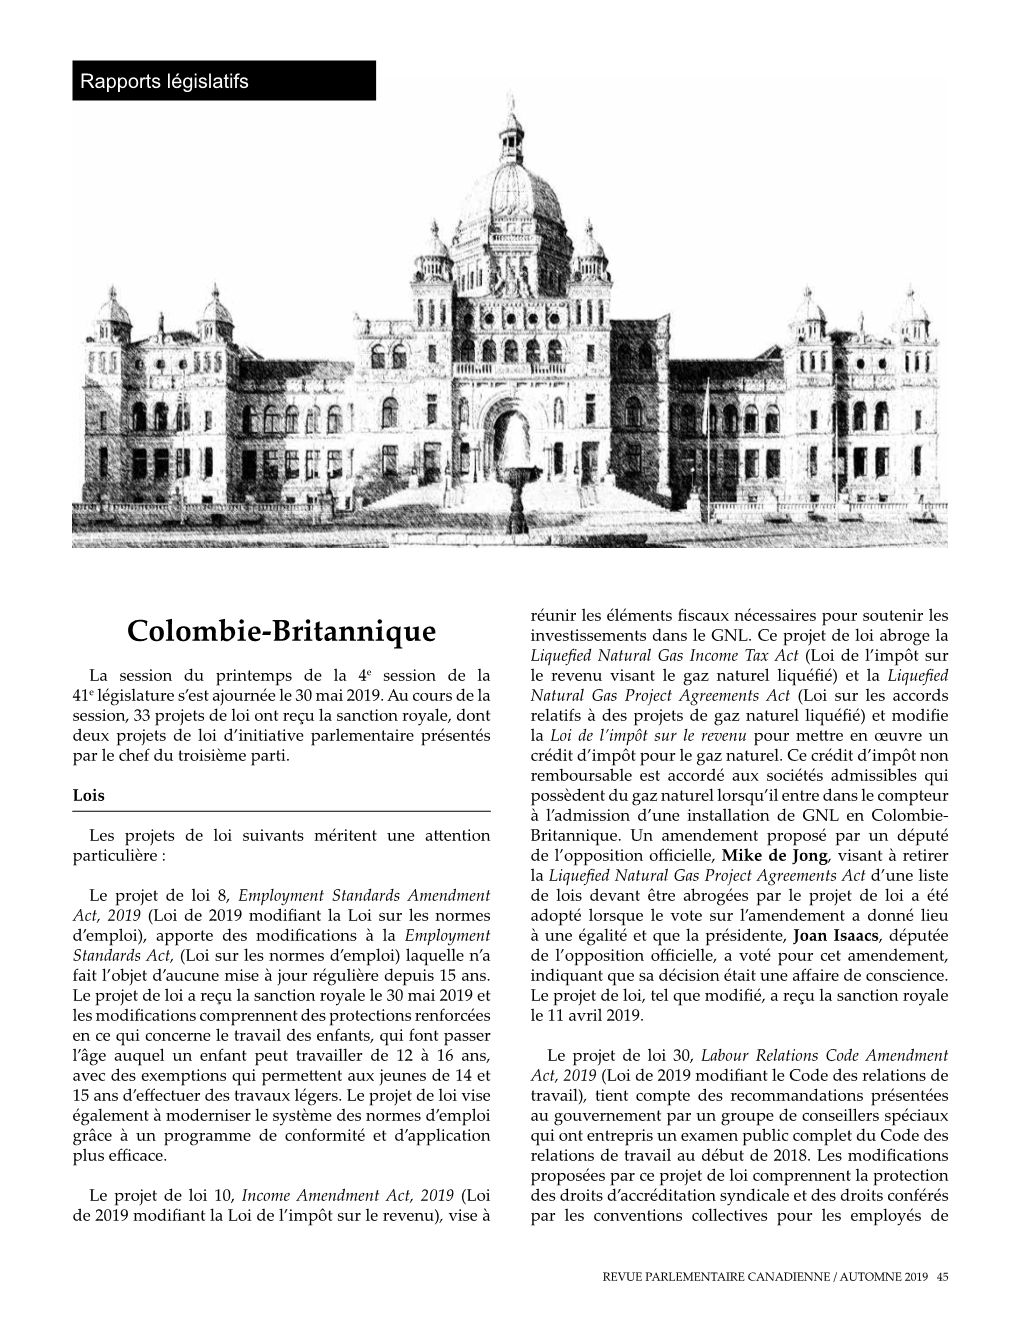 Colombie-Britannique Investissements Dans Le GNL